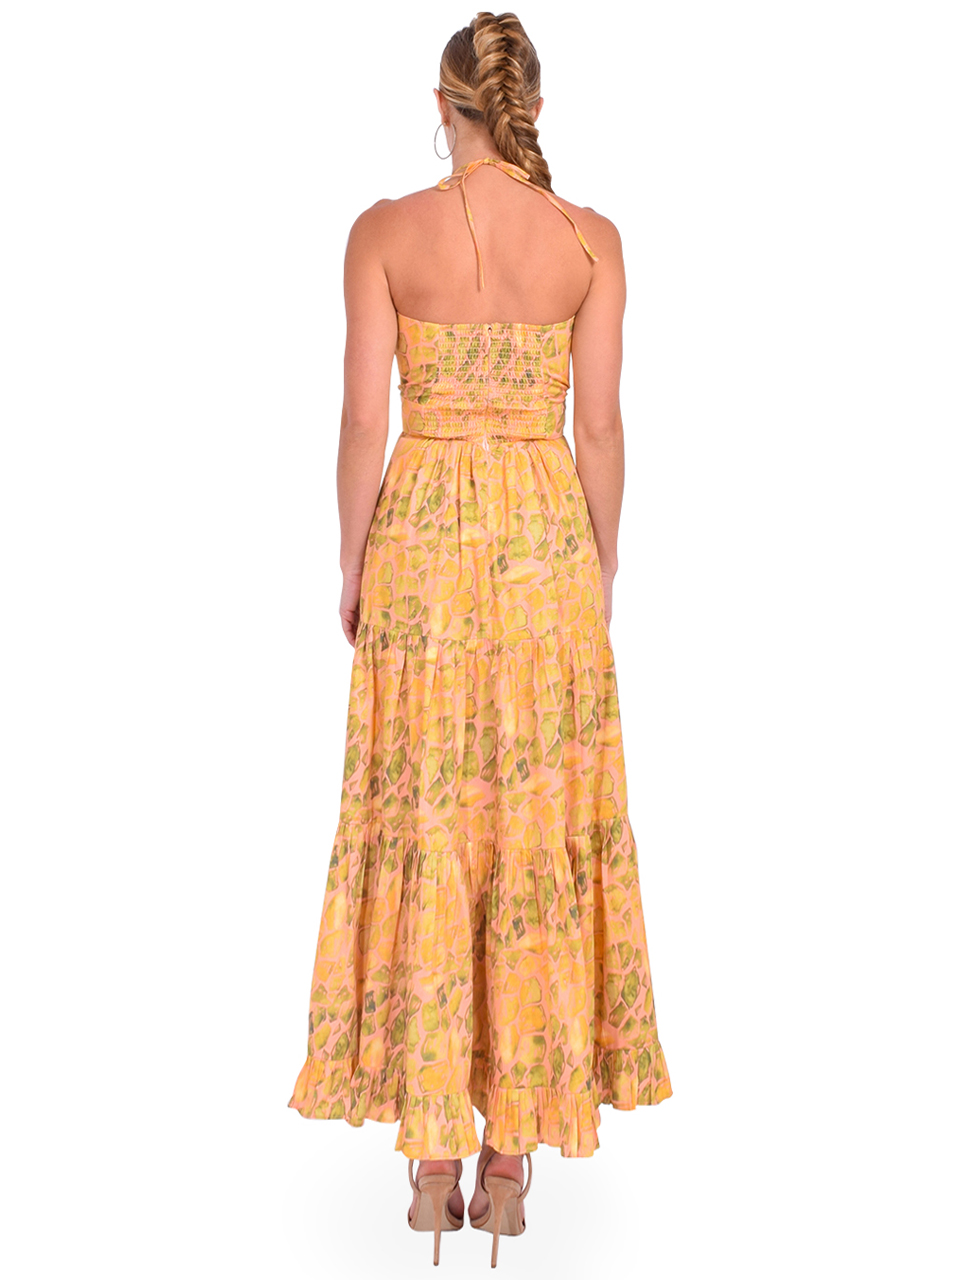 KARINA GRIMALDI Dawn Print Maxi Dress in Apricot Stones Back View 